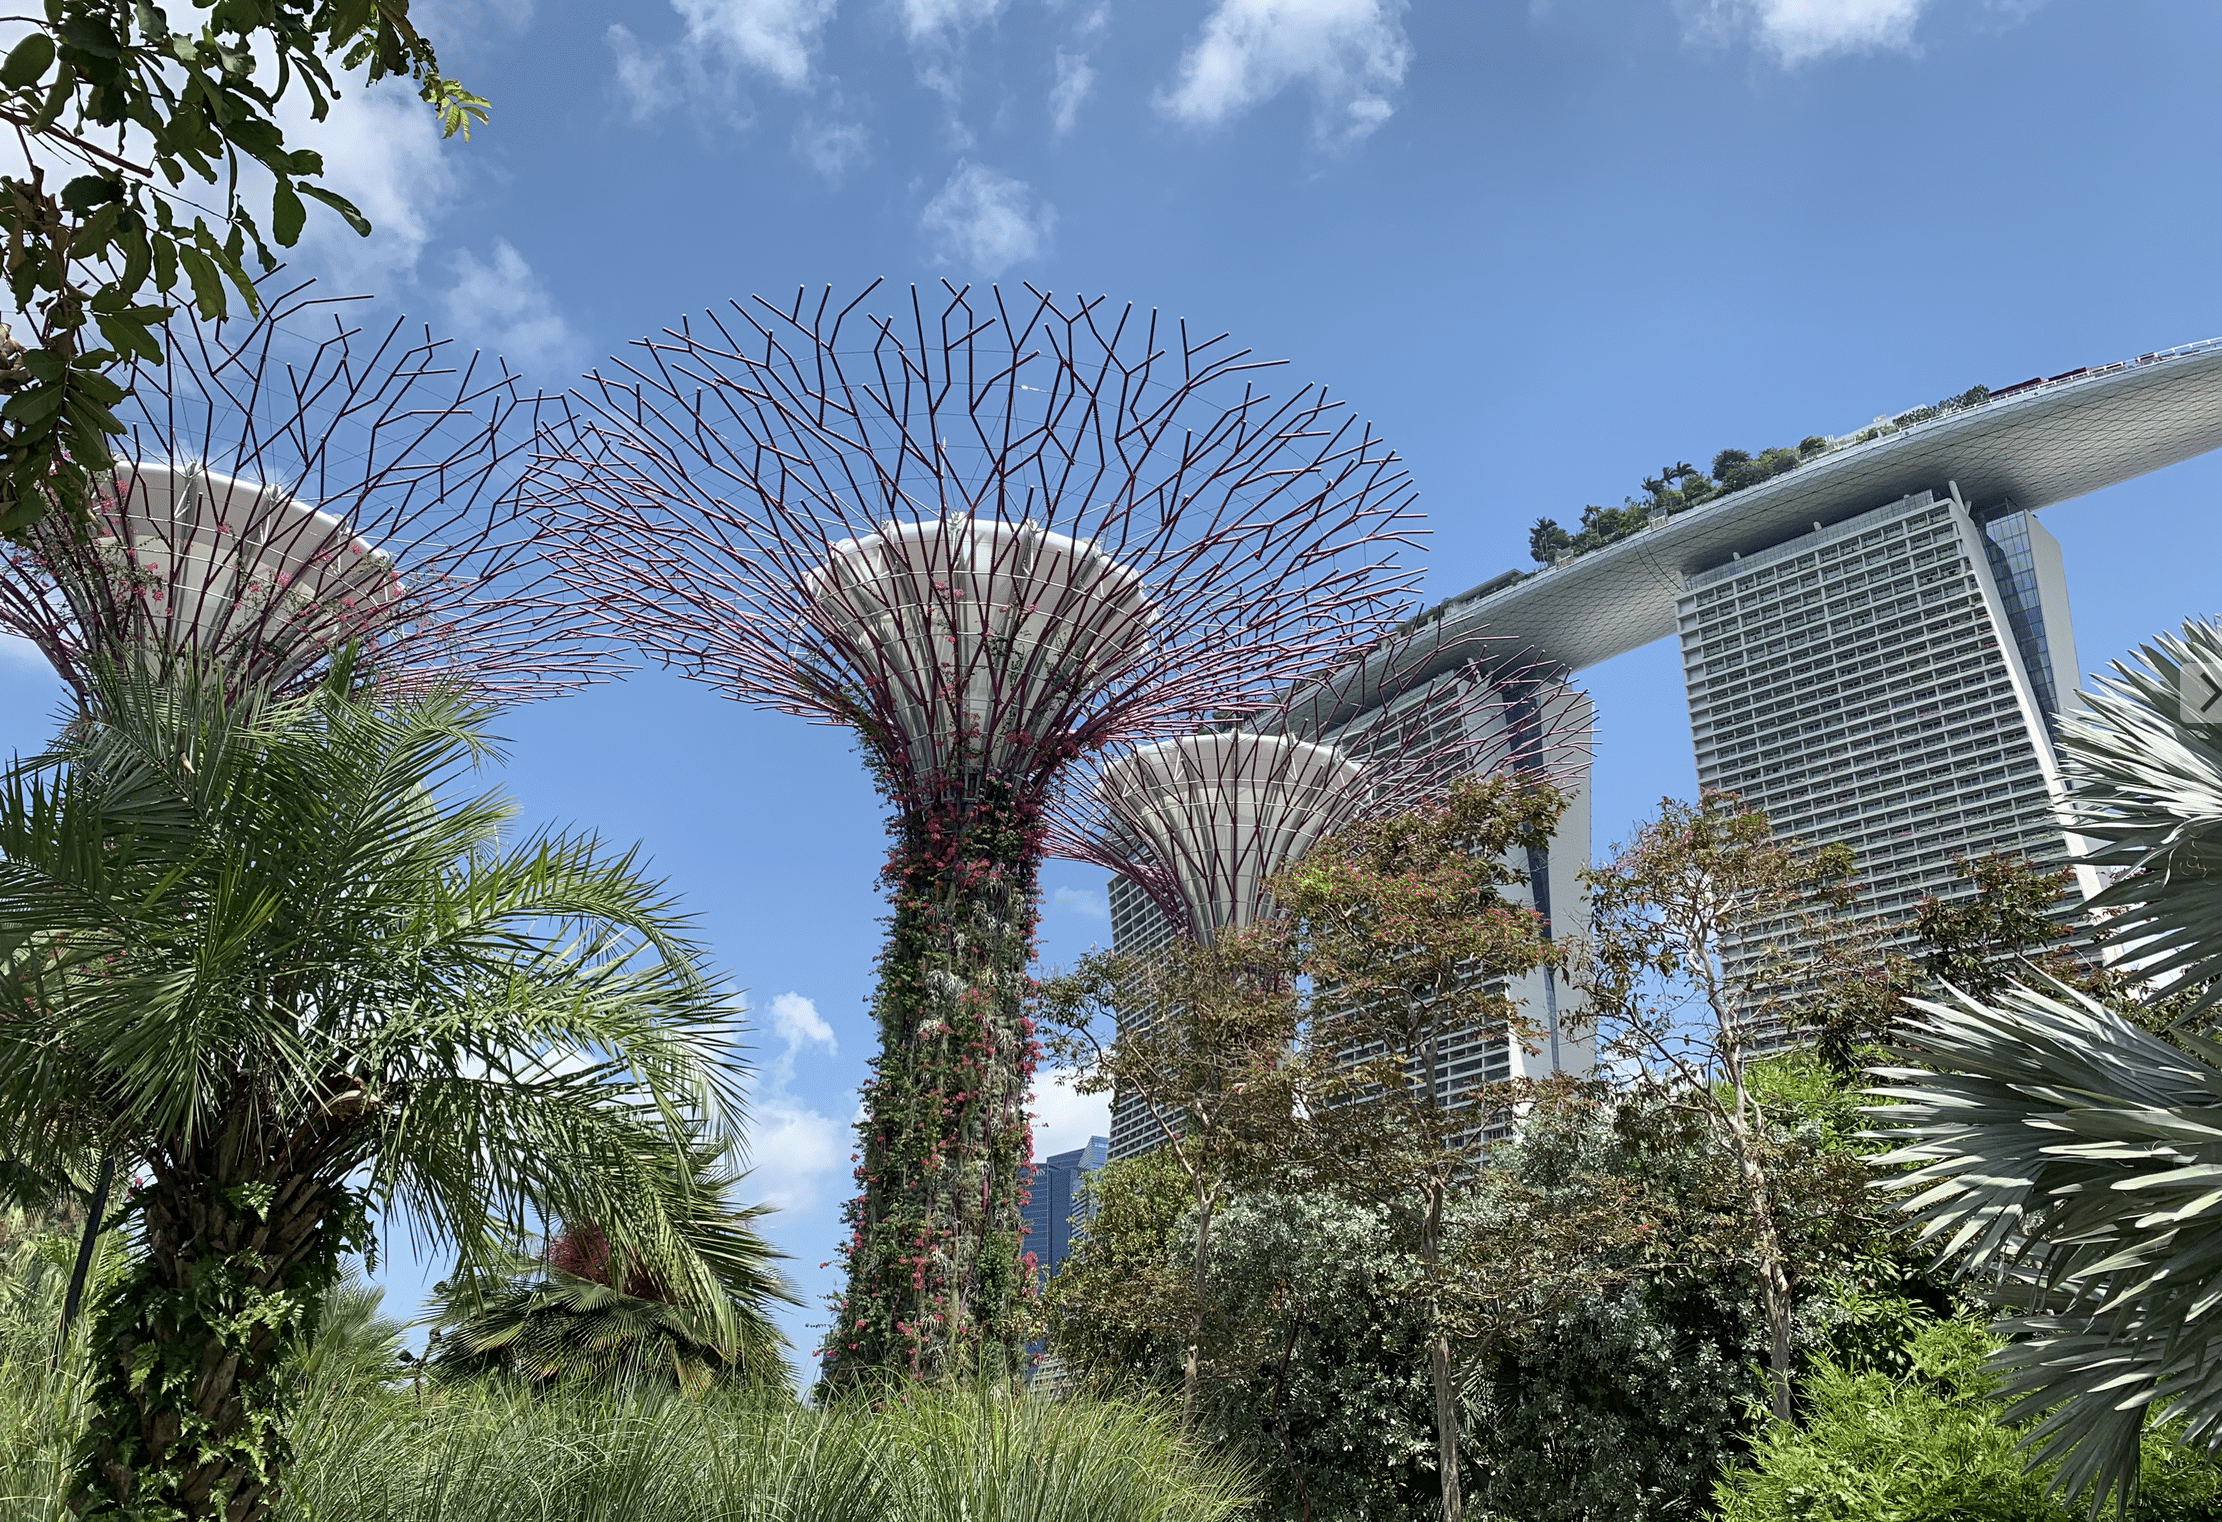 visiter singapour : les jardins botaniques